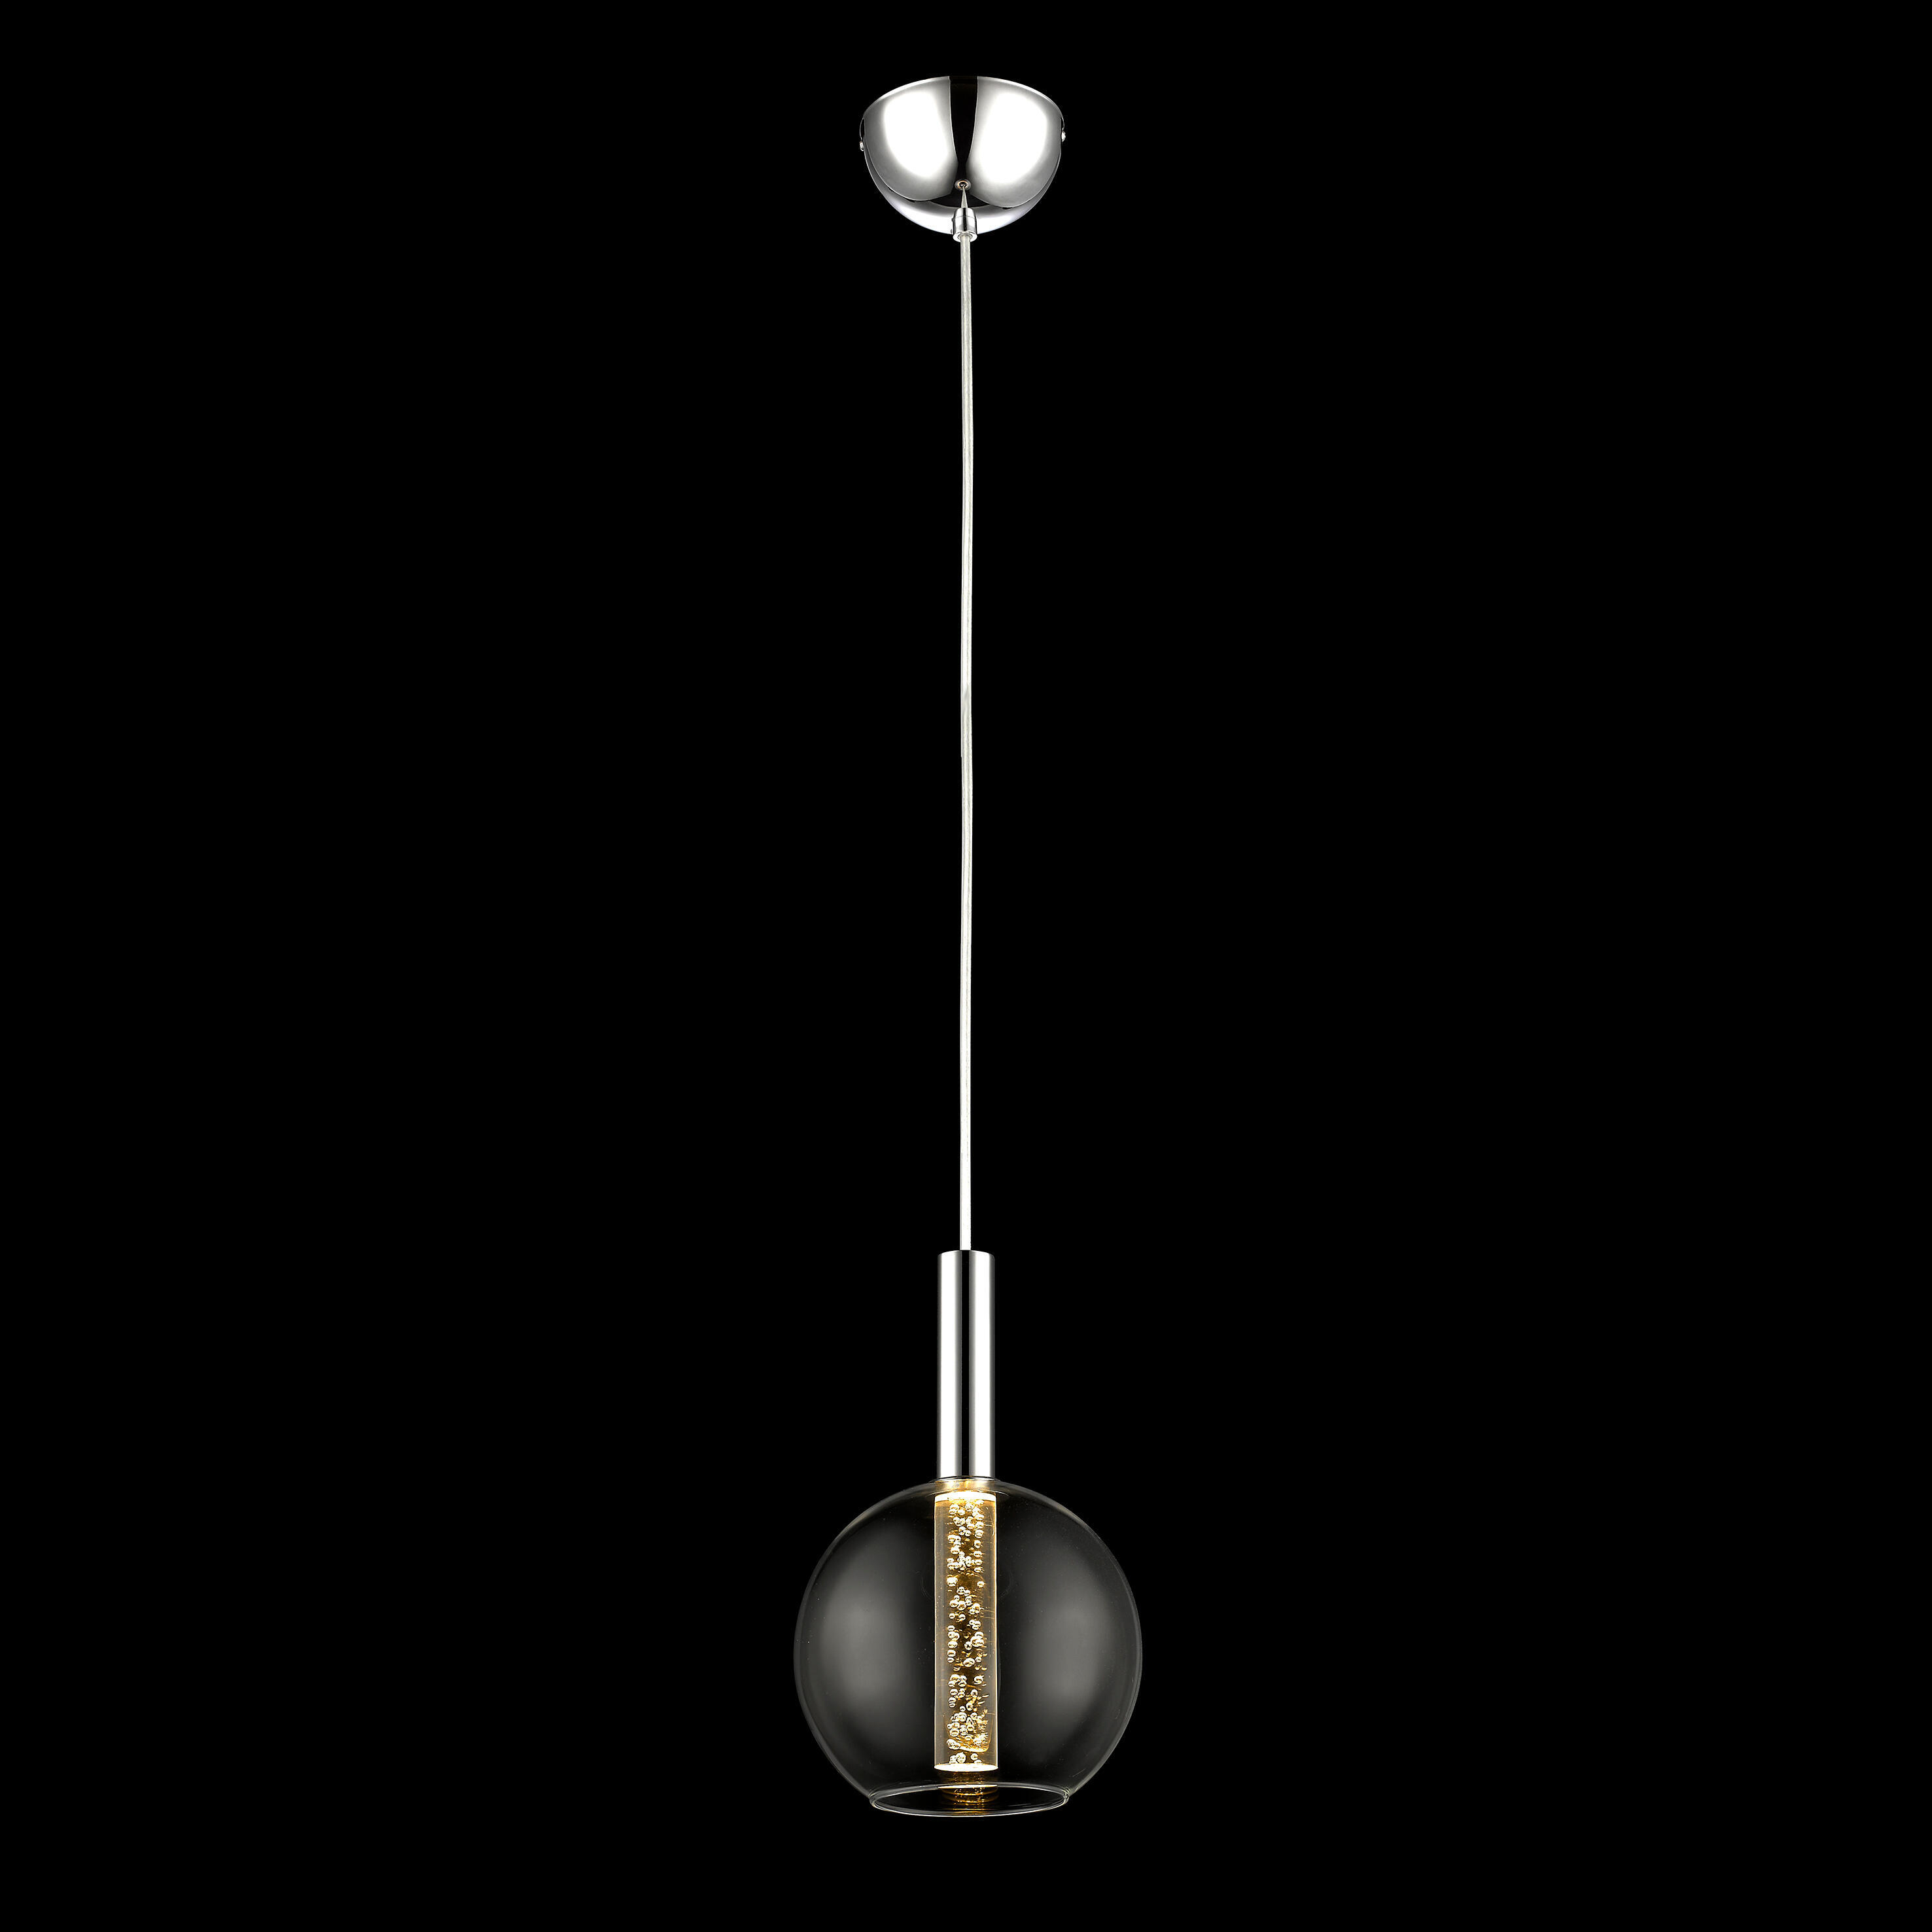 Lampadario Moderno Elegant cromo, in metallo, D. 18 cm, L. 152 cm, BRILLIANT - 6